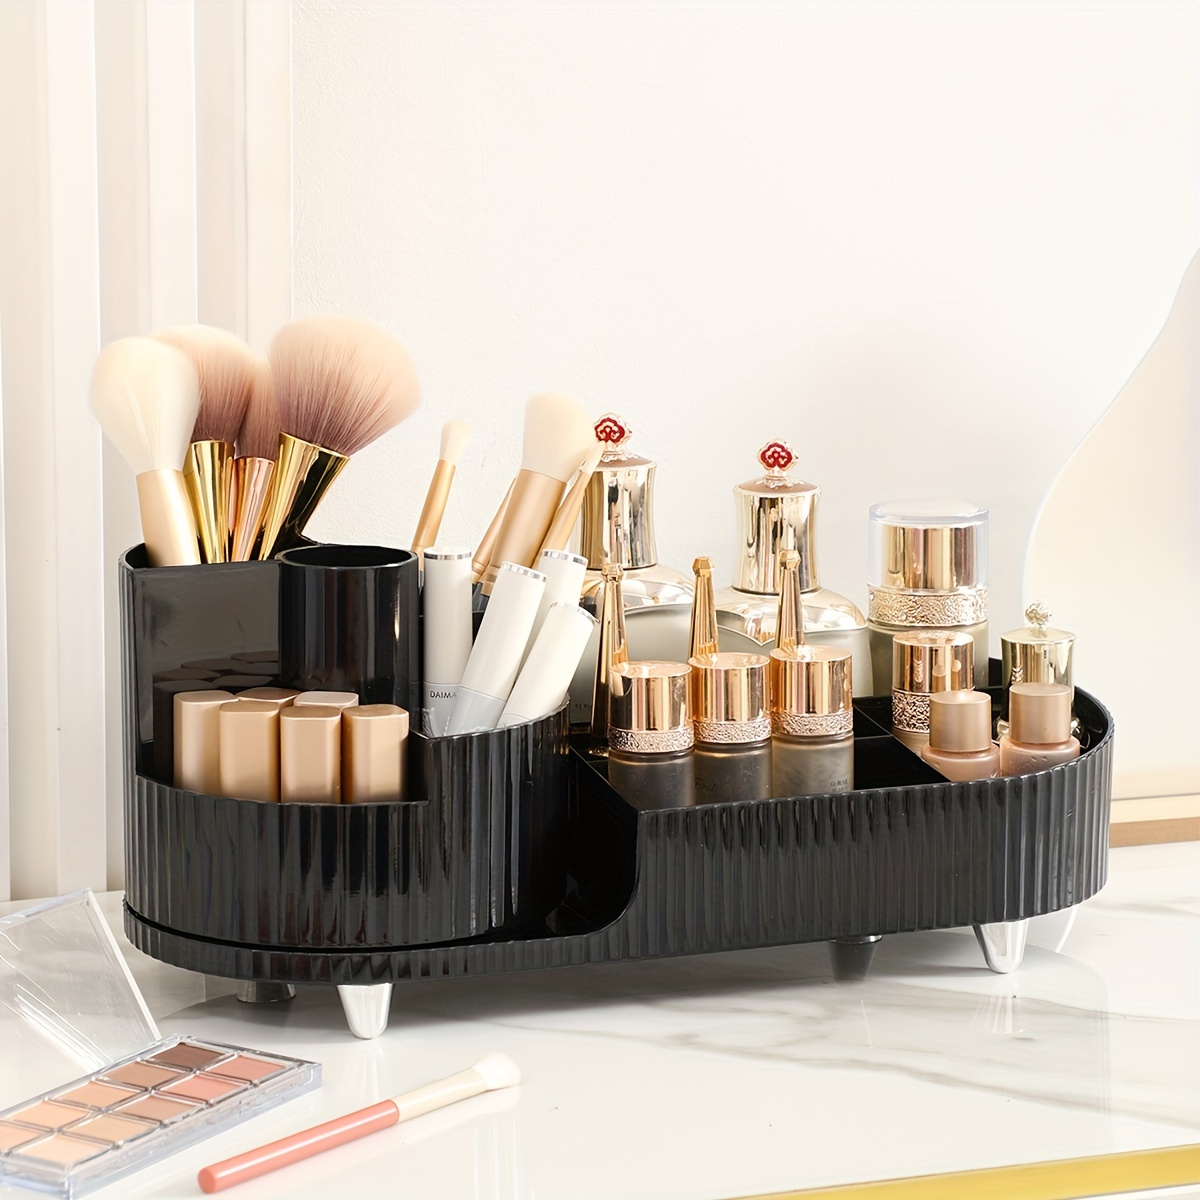 1pc 360° Rotating Makeup Organizer, DIY Adjustable Makeup Storage Rack,  Large Capacity Makeup Caddy Shelf, Cosmetics For Organizer For Countertop